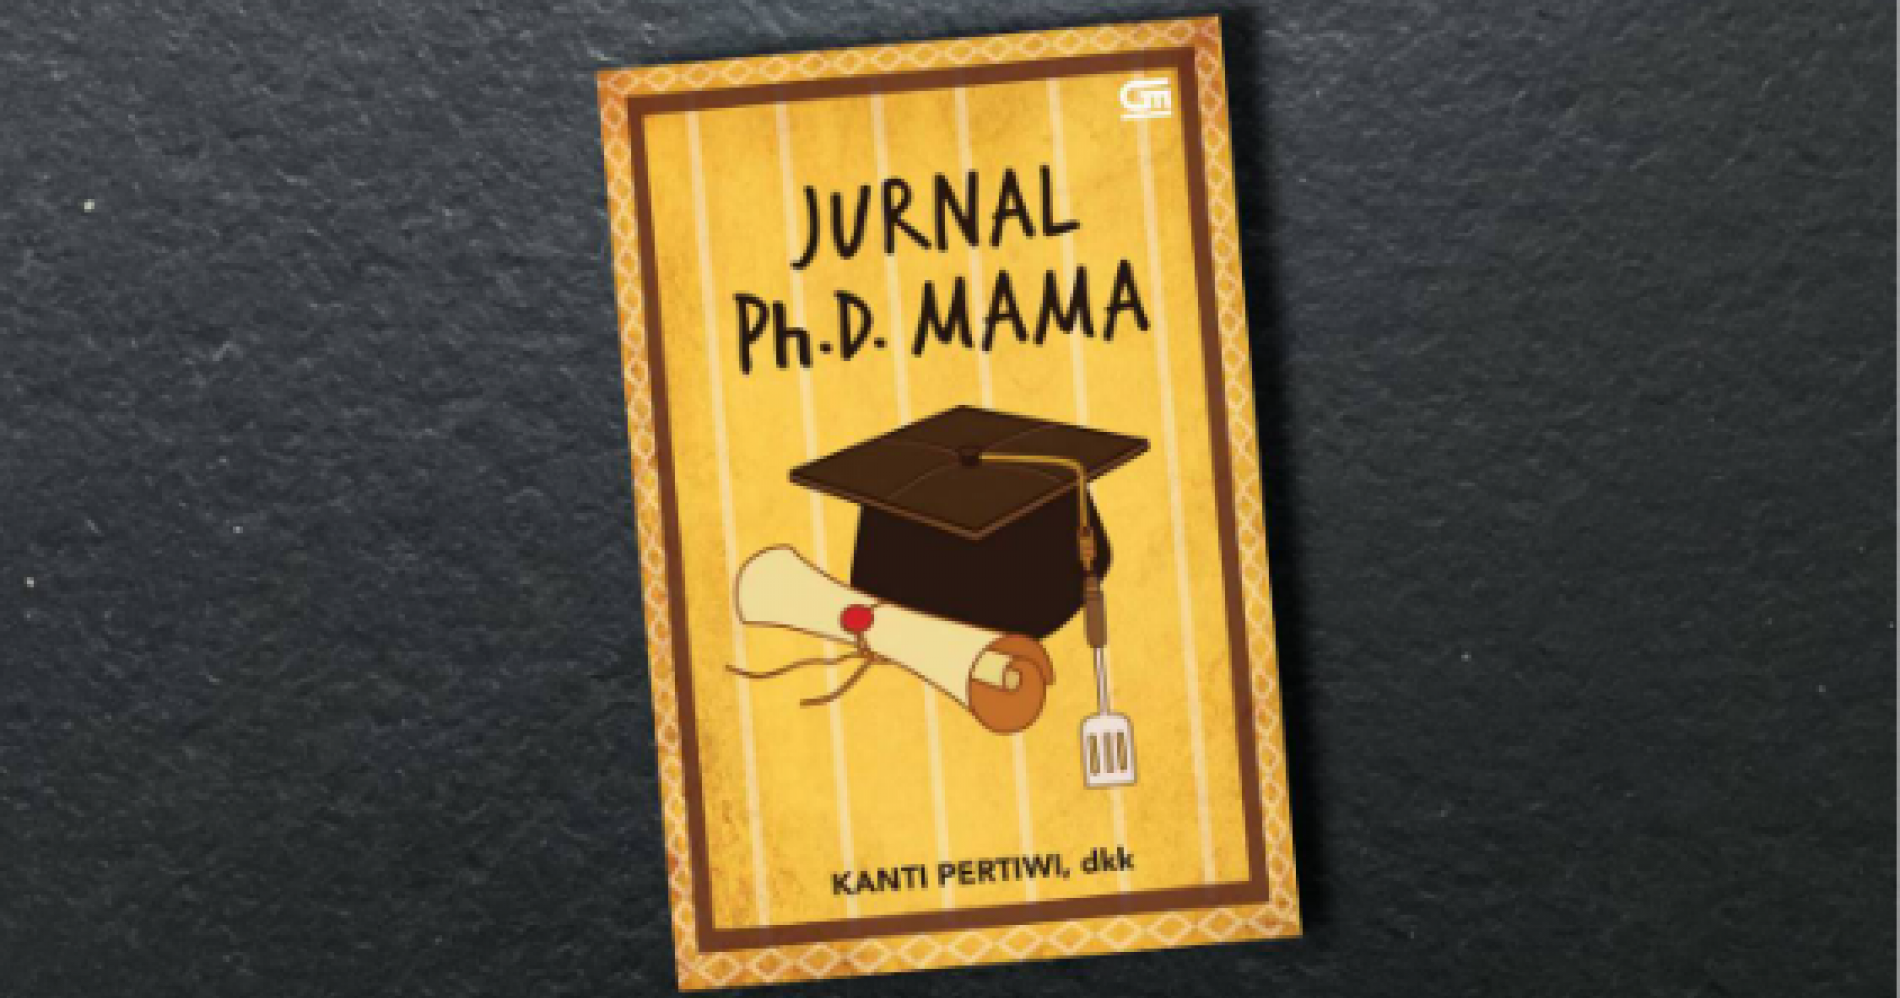 Buku "Jurnal Ph.D. Mama" karya Kanti Pertiwi, dkk. (Sumber gambar: Muhamad Ali)